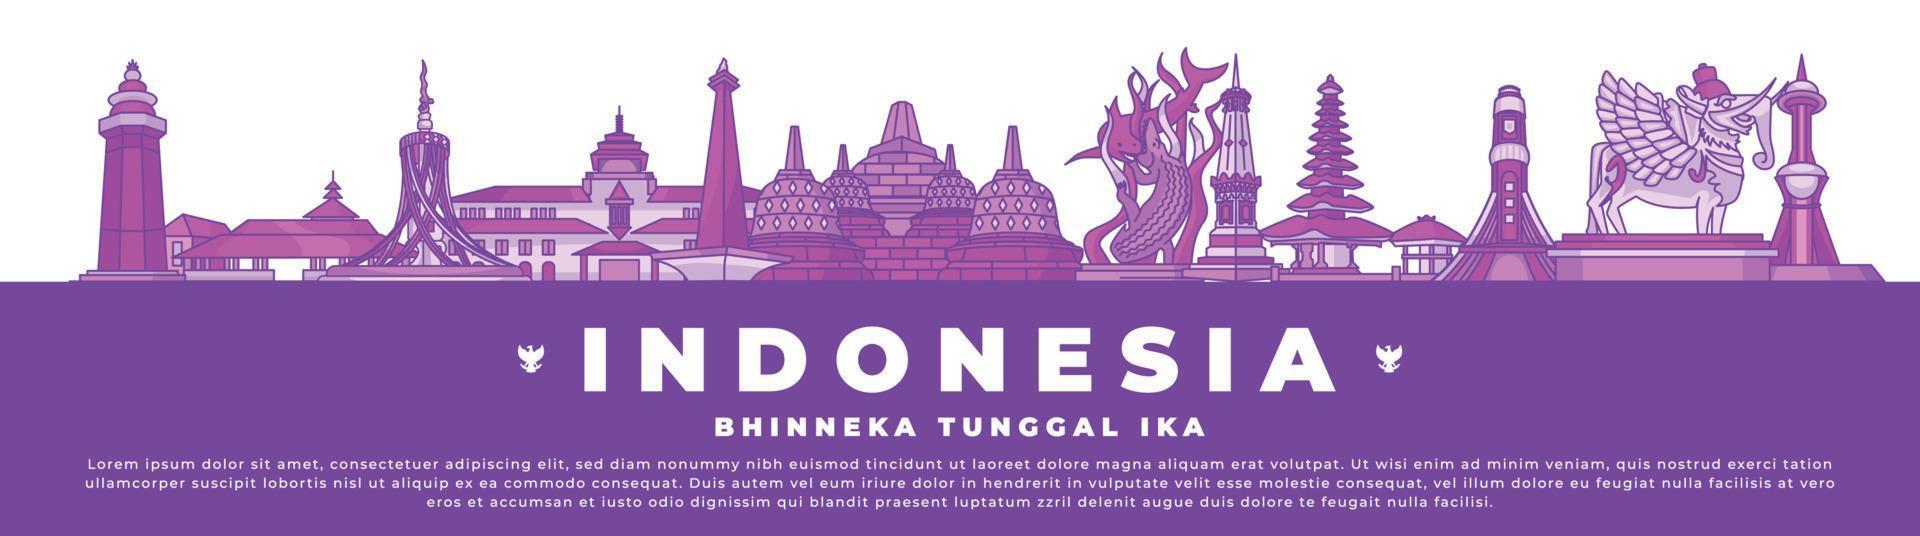 indonesien banner stadt wahrzeichen vektor